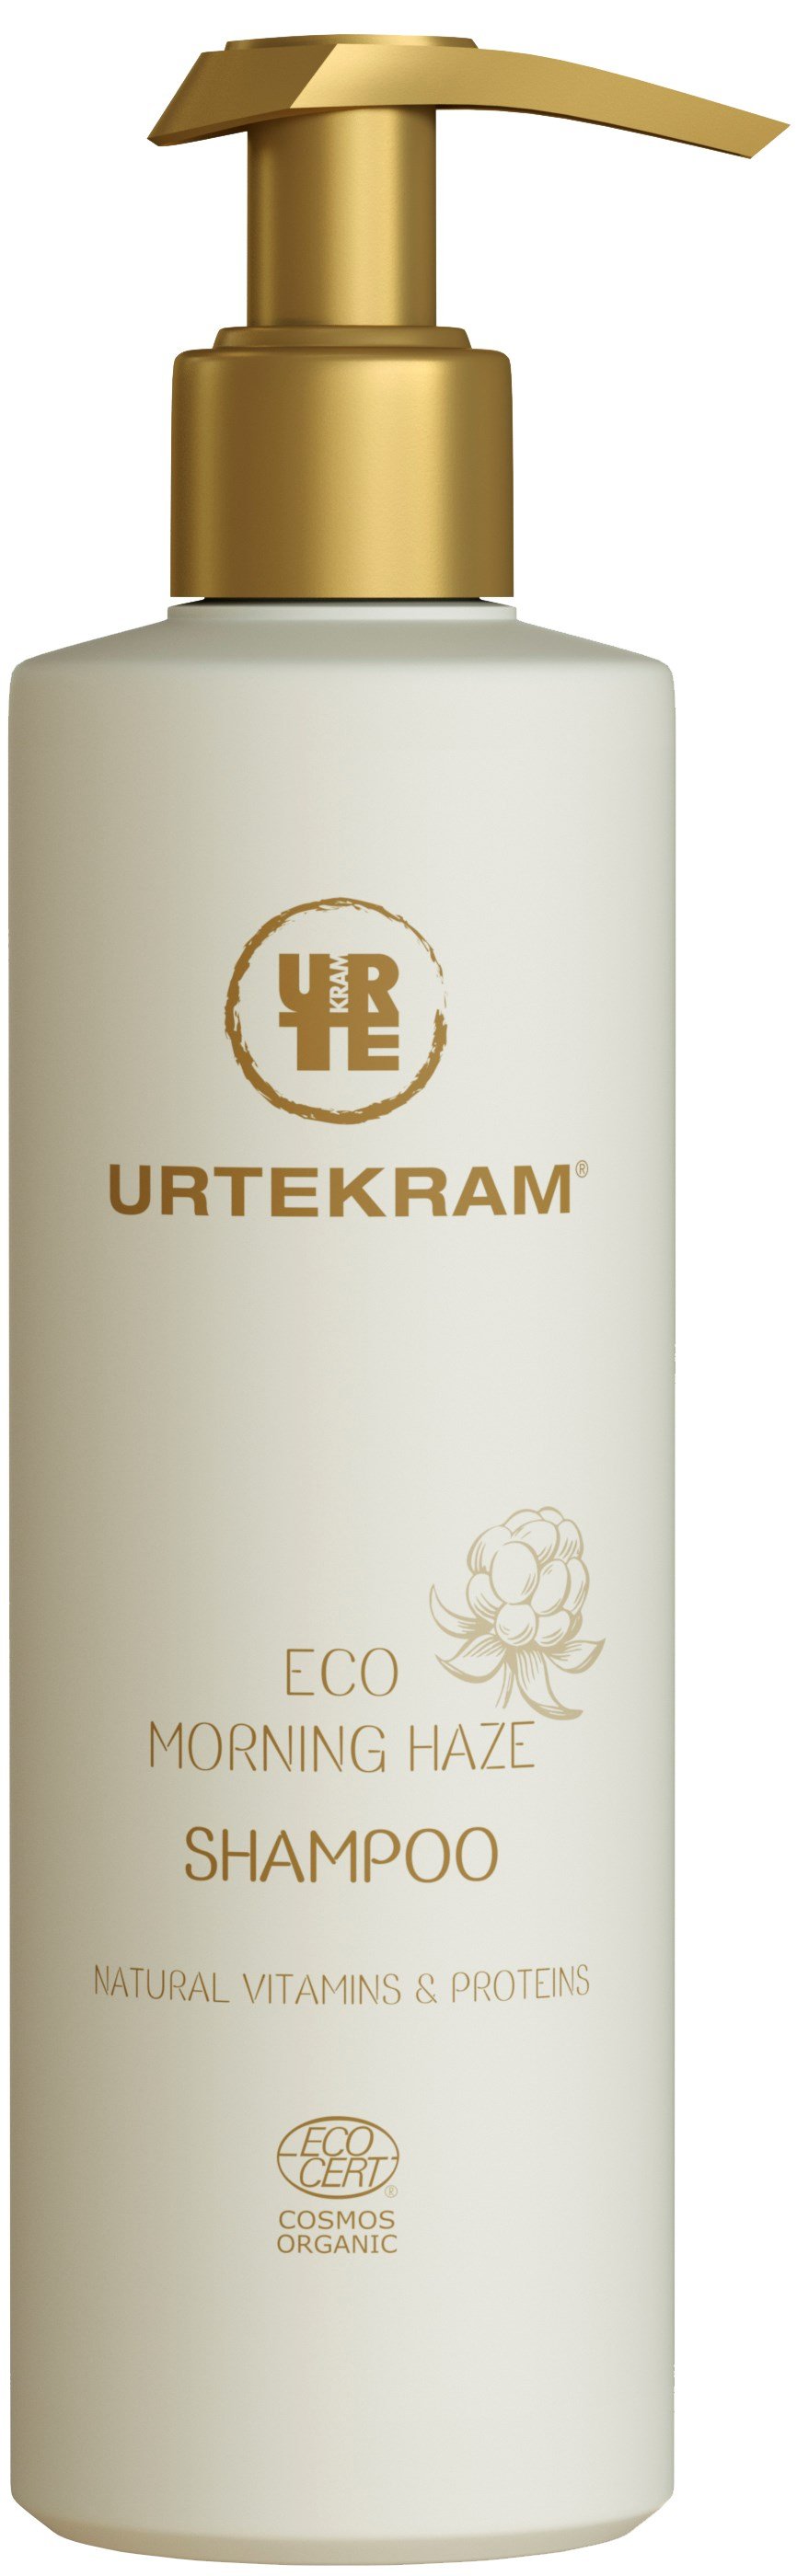 Органический шампунь Urtekram Утренний туман, для всех типов волос, 245 мл - фото 1